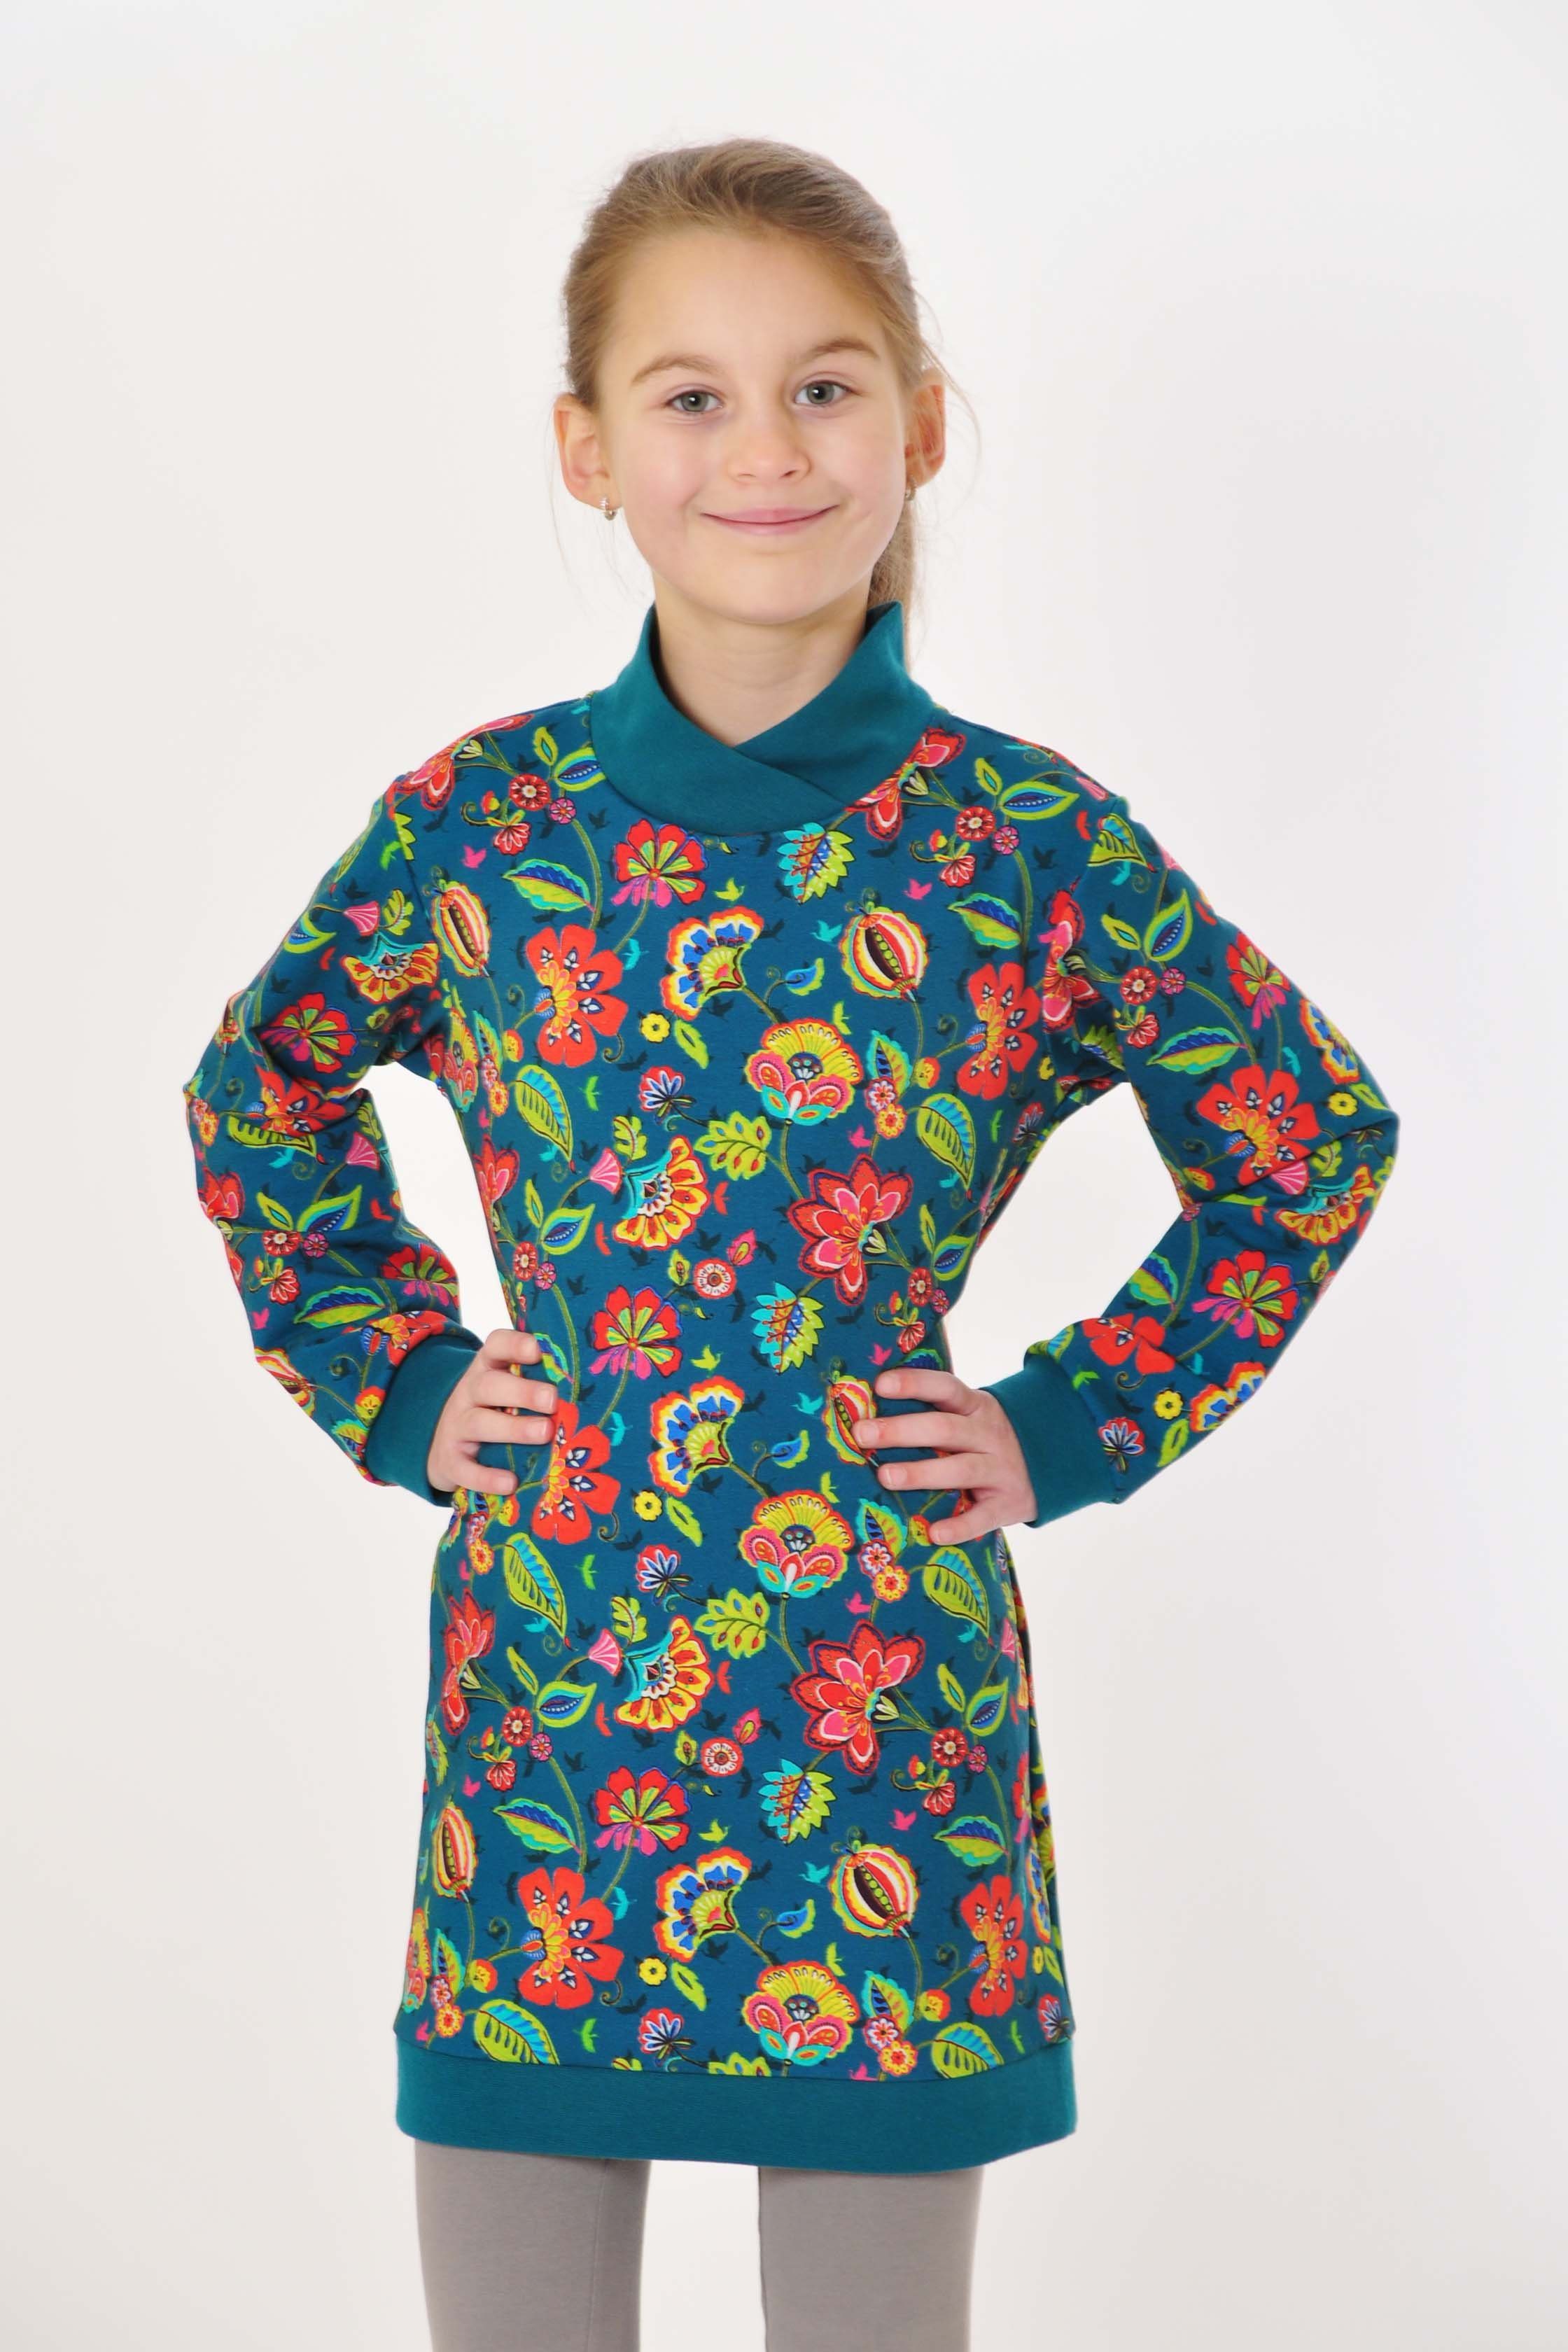 coolismo Sweatkleid Sweatshirt Motivdruck für europäische Mädchen mit Produktion coole Kleid petrol Blumen